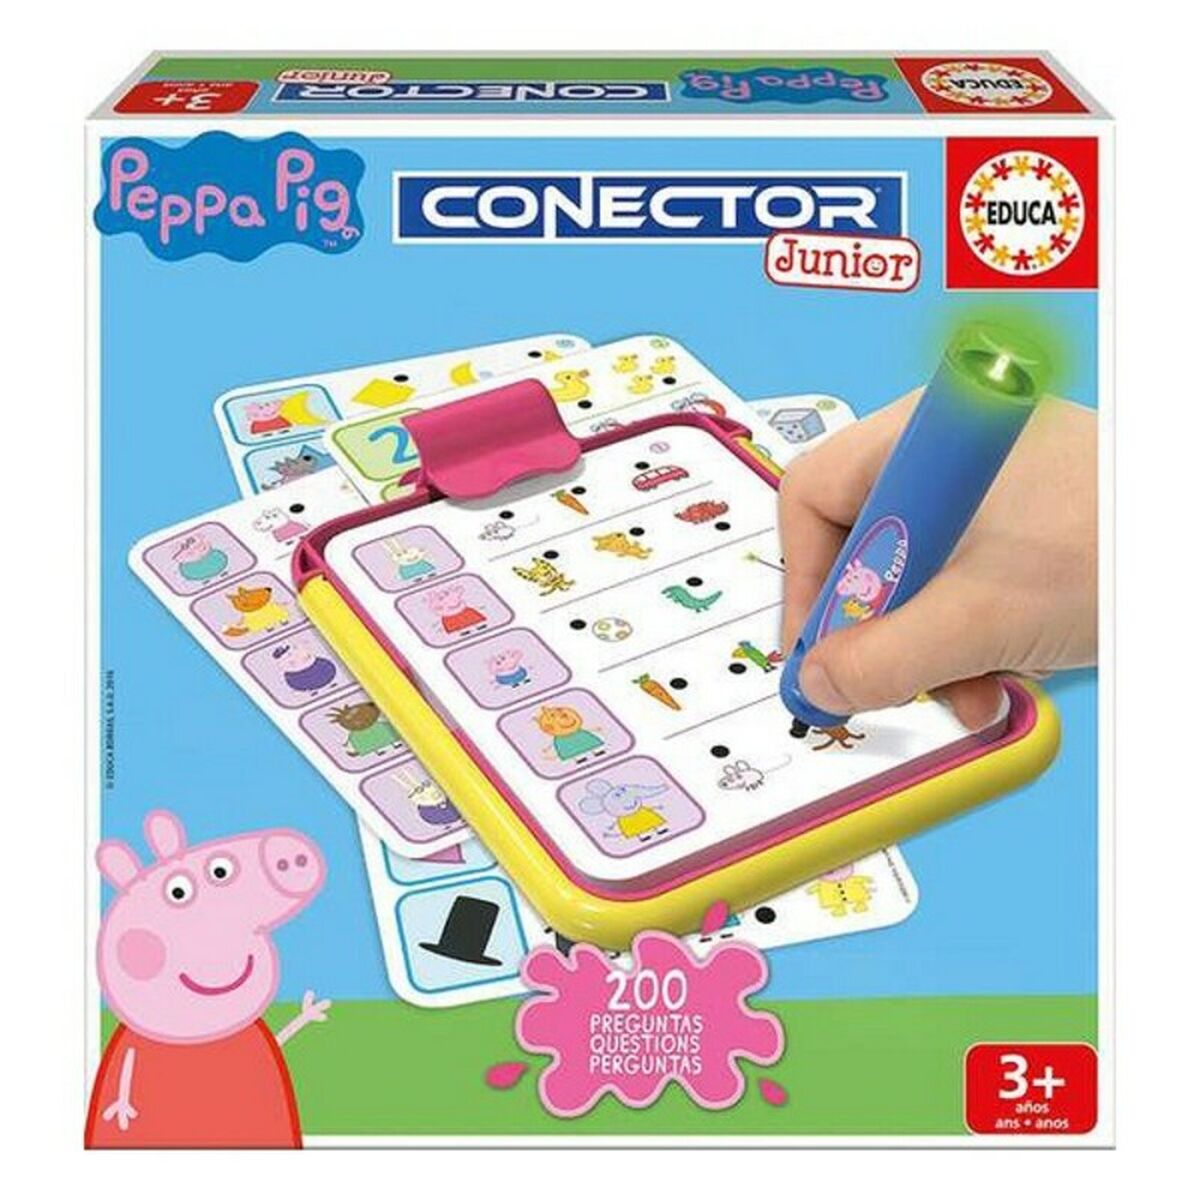 Osta tuote Opettavainen peli Conector Junior Peppa Pig Educa 16230 Monivärinen (1 Kappaletta) verkkokaupastamme Korhone: Lelut & Asut 10% alennuksella koodilla KORHONE